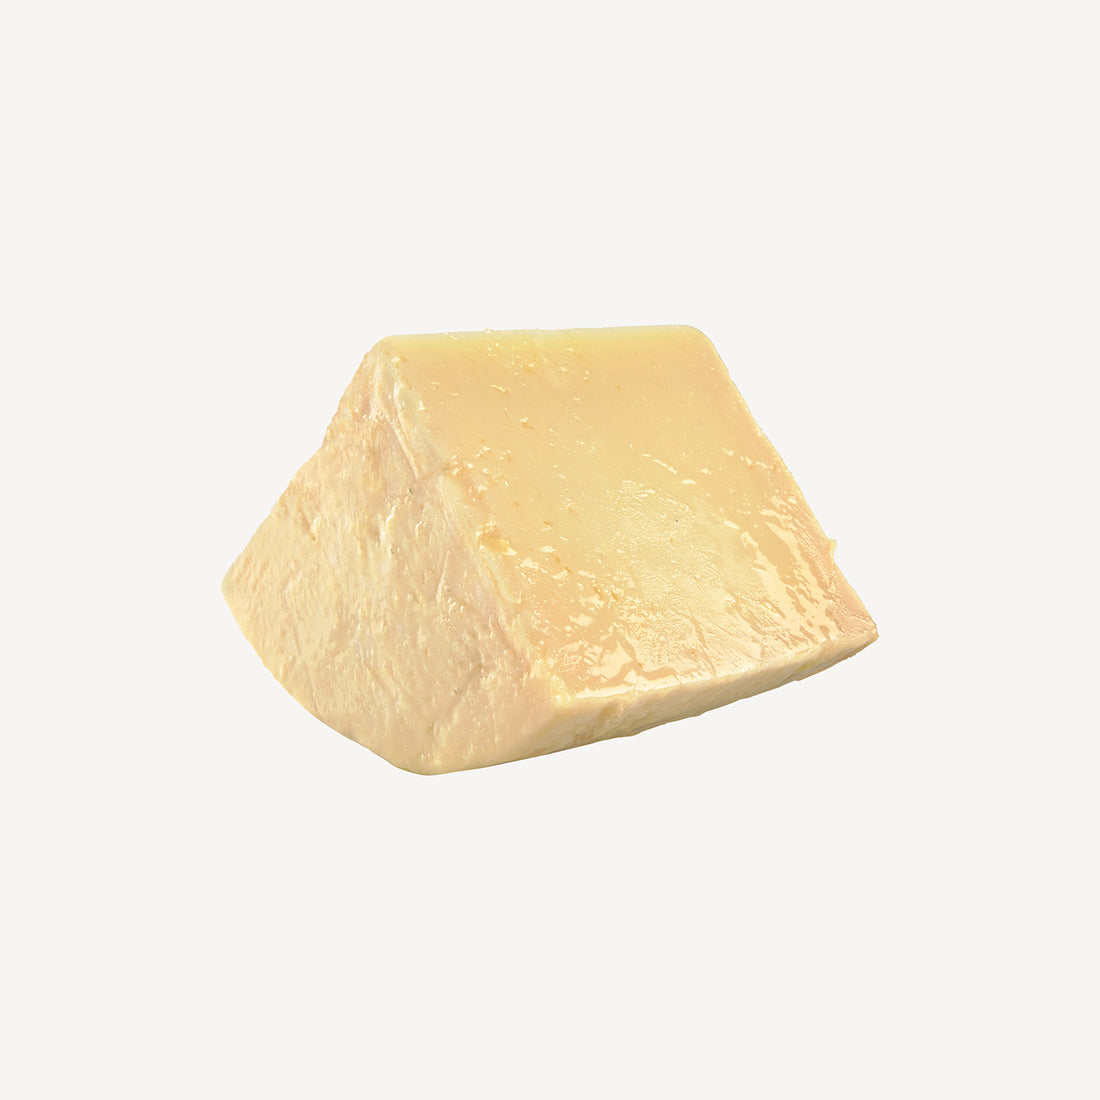 La cuña de queso madurado en aceite, mostrando la integración perfecta de aceite y queso, un preludio a una experiencia culinaria celestial.